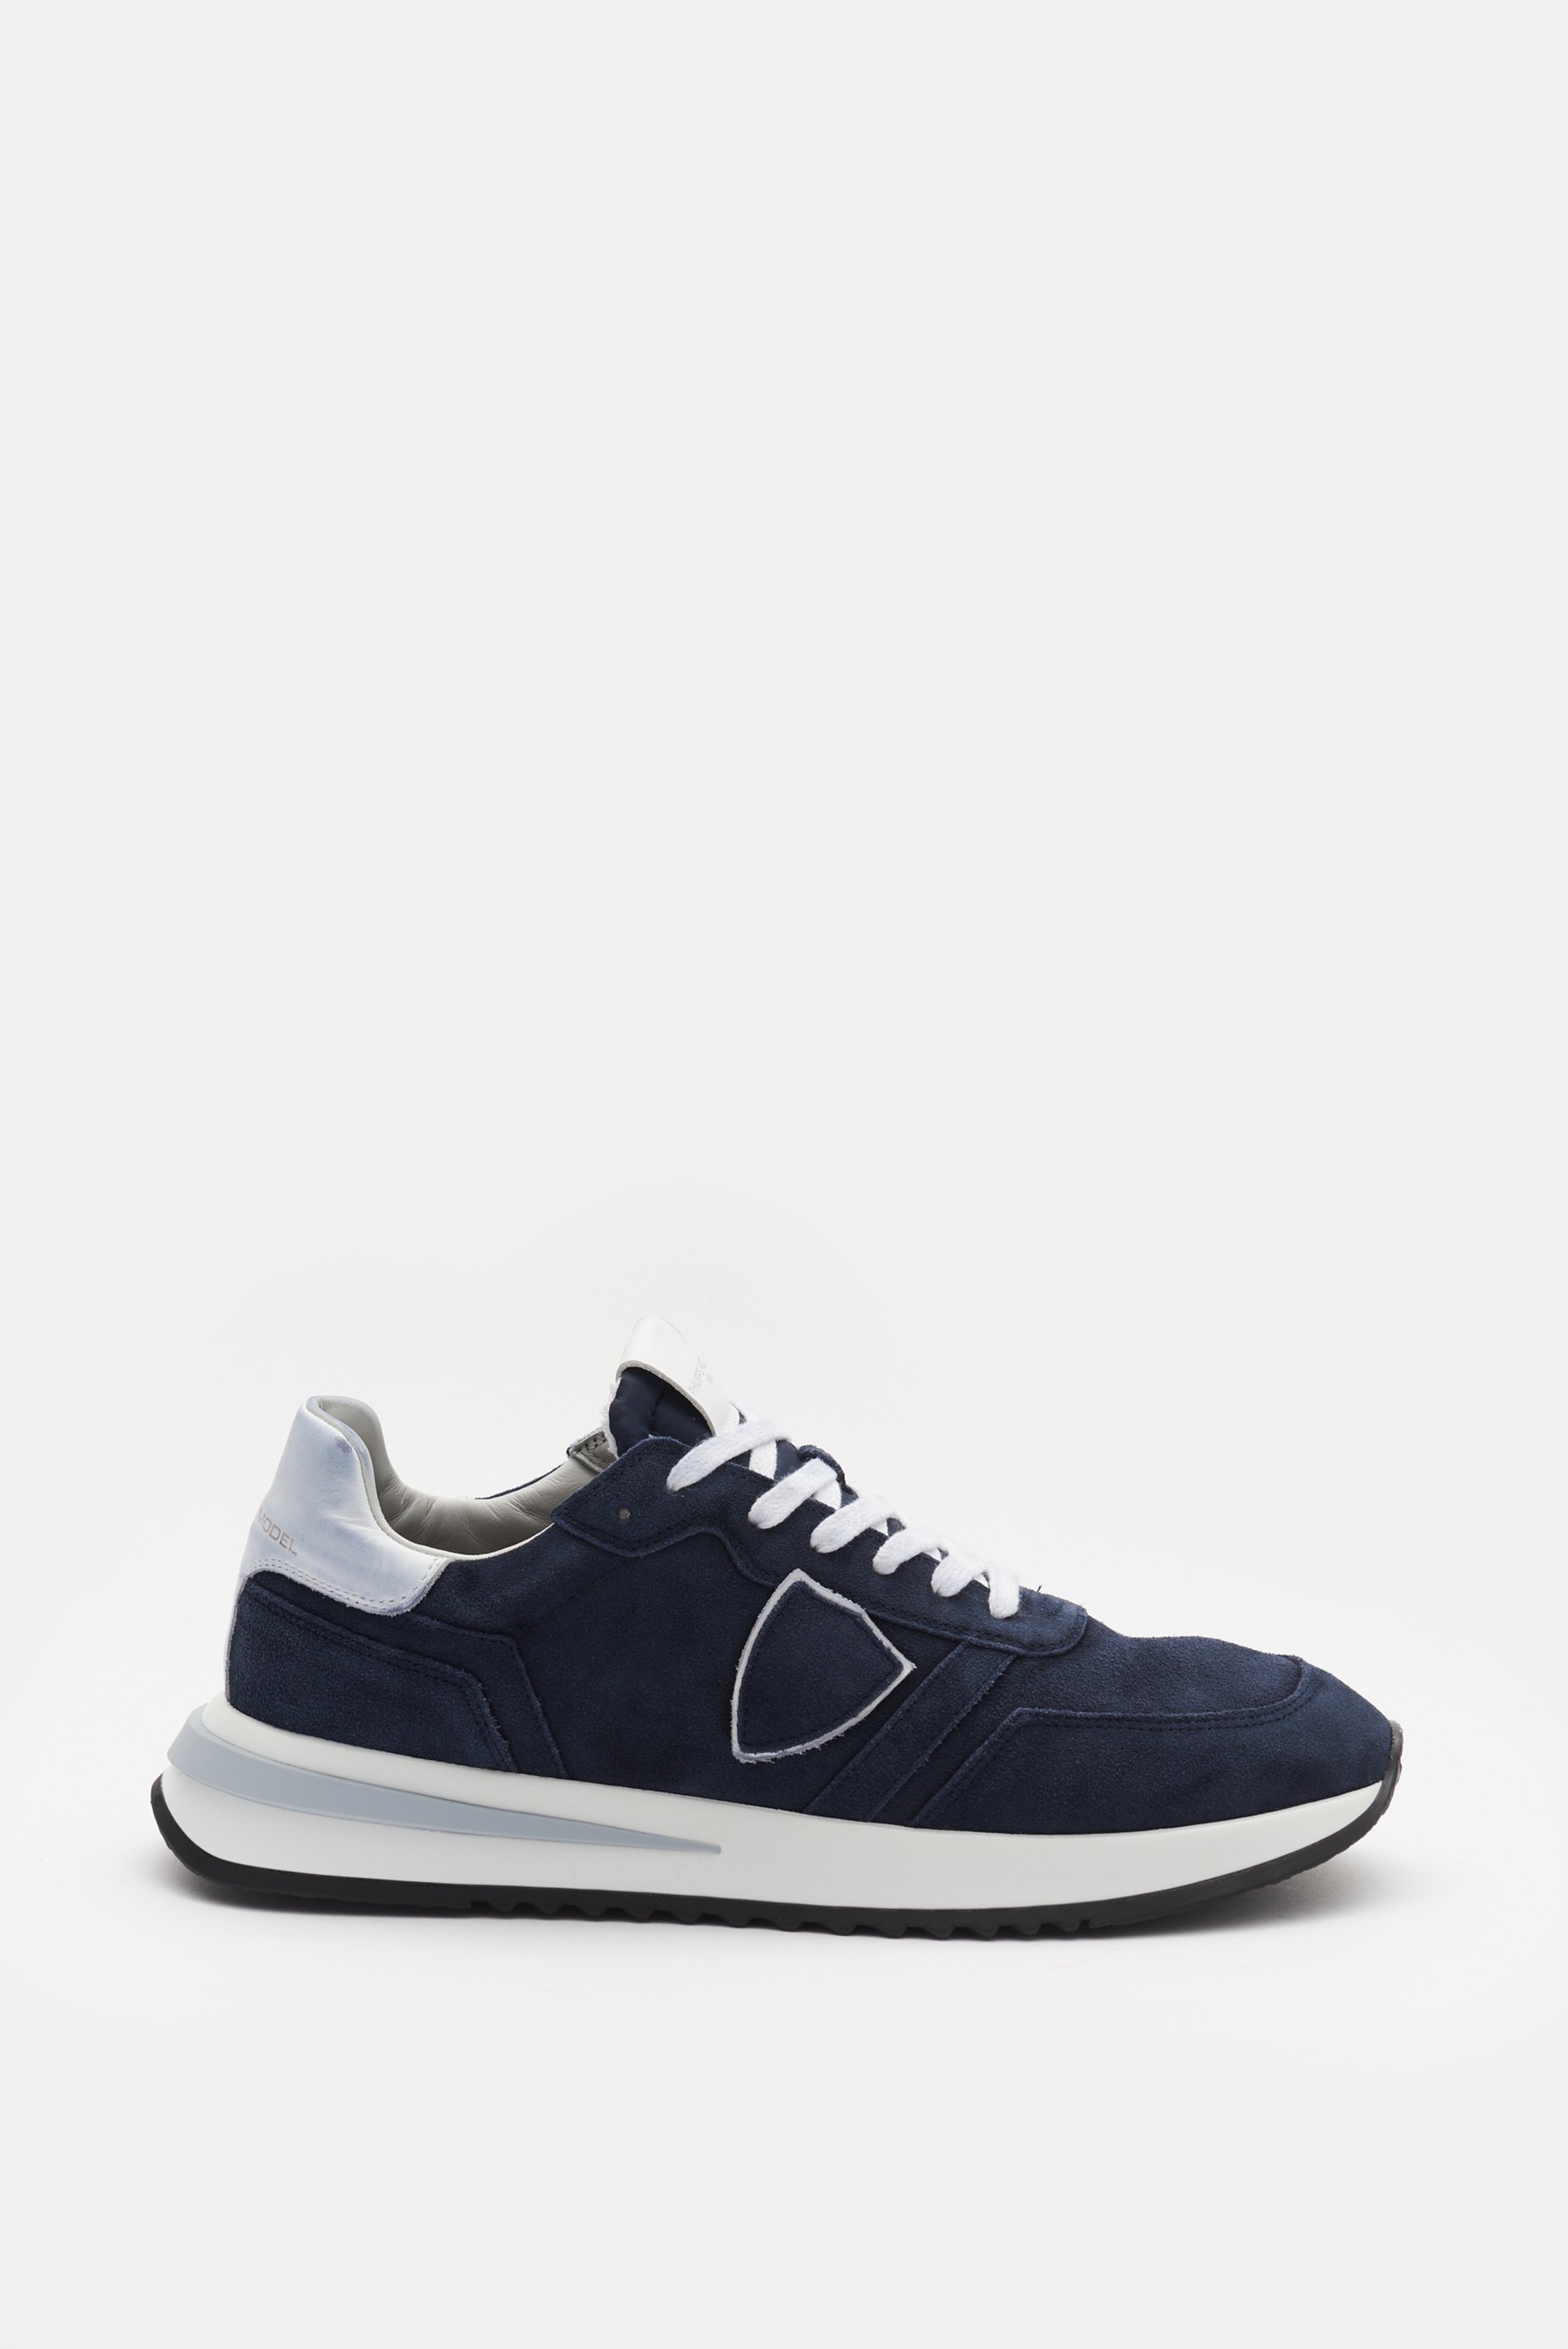 Philippe Model  - Herren - Sneaker 'Tropez 2.1' navy/weiß